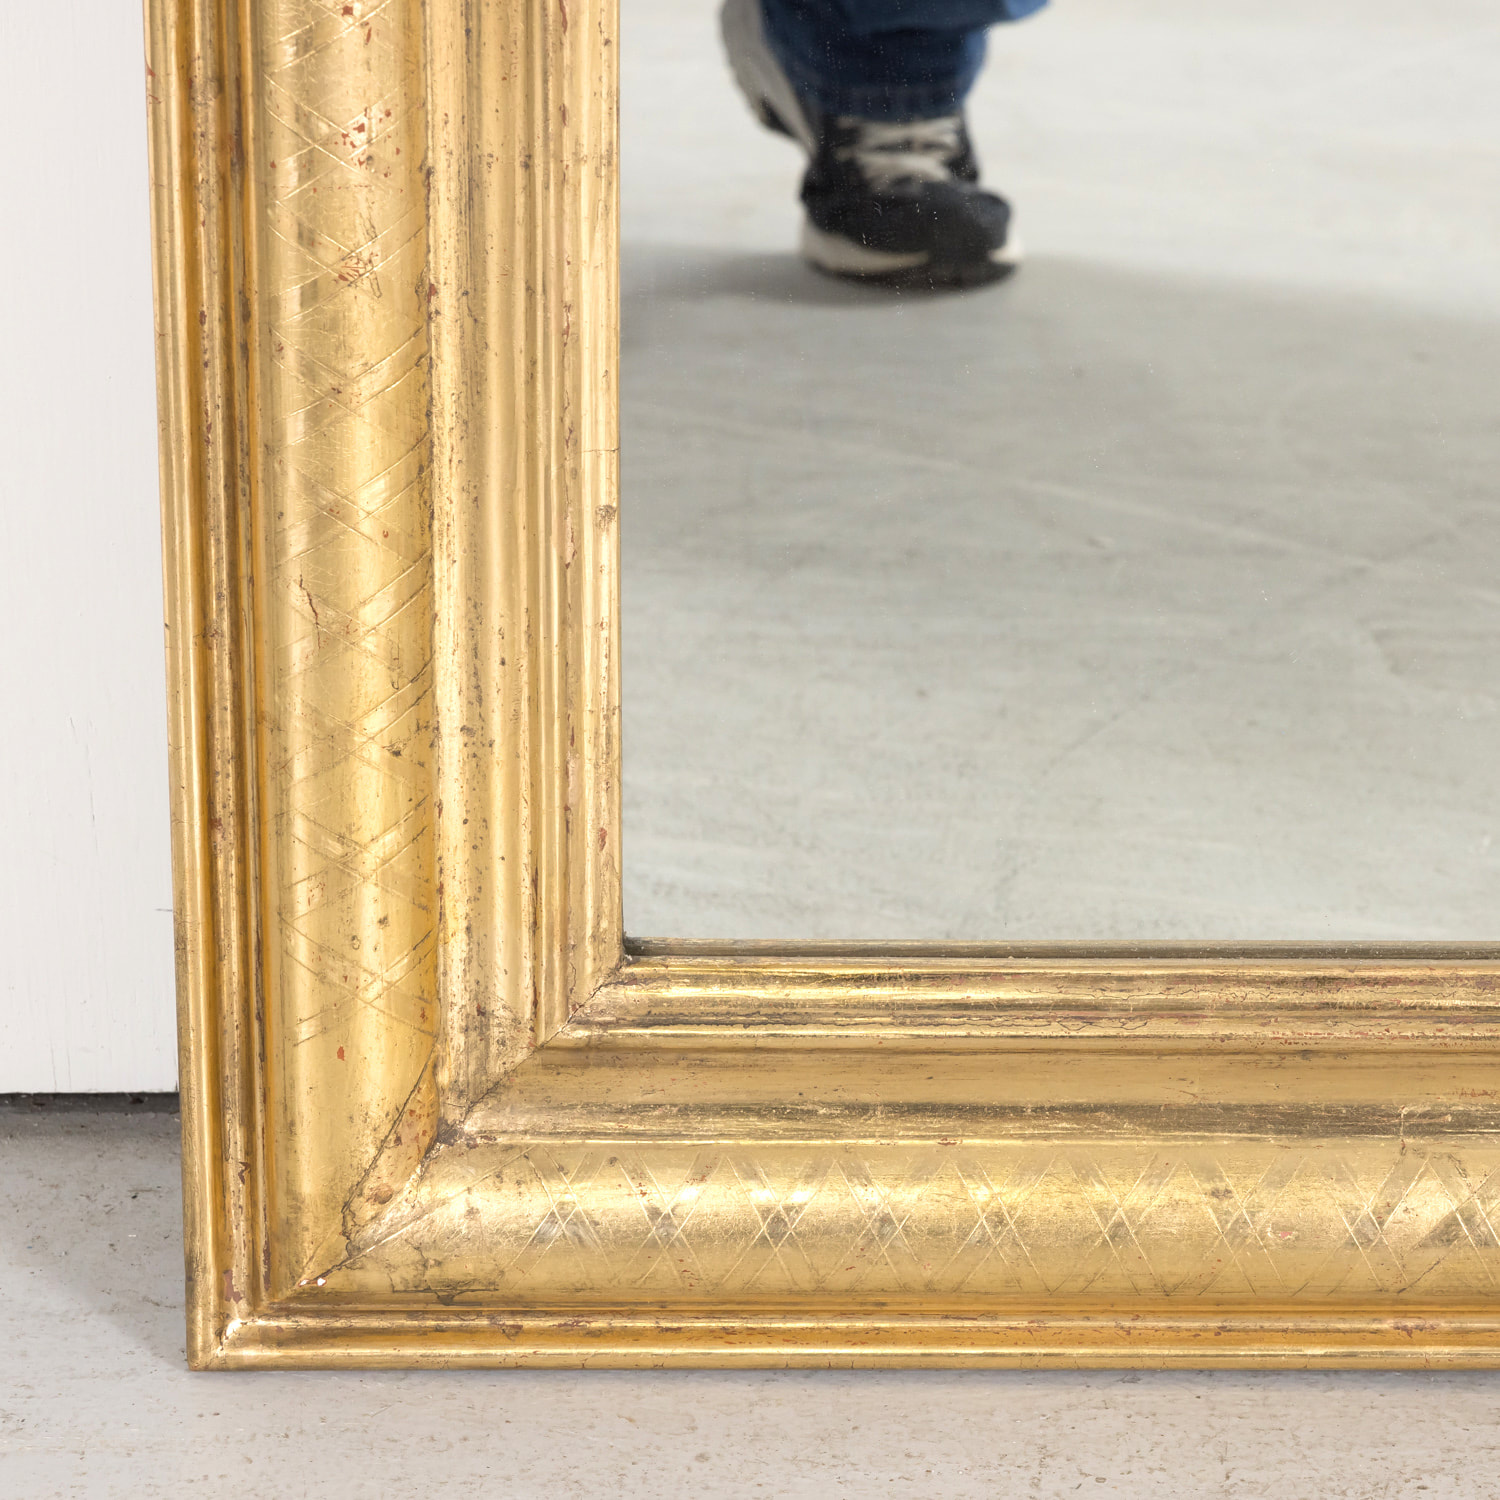 LARGE ANTIQUE GILT LOUIS PHILIPPE MIRROR C1860  Mirror, Large antique  mirror, Mirror over couch